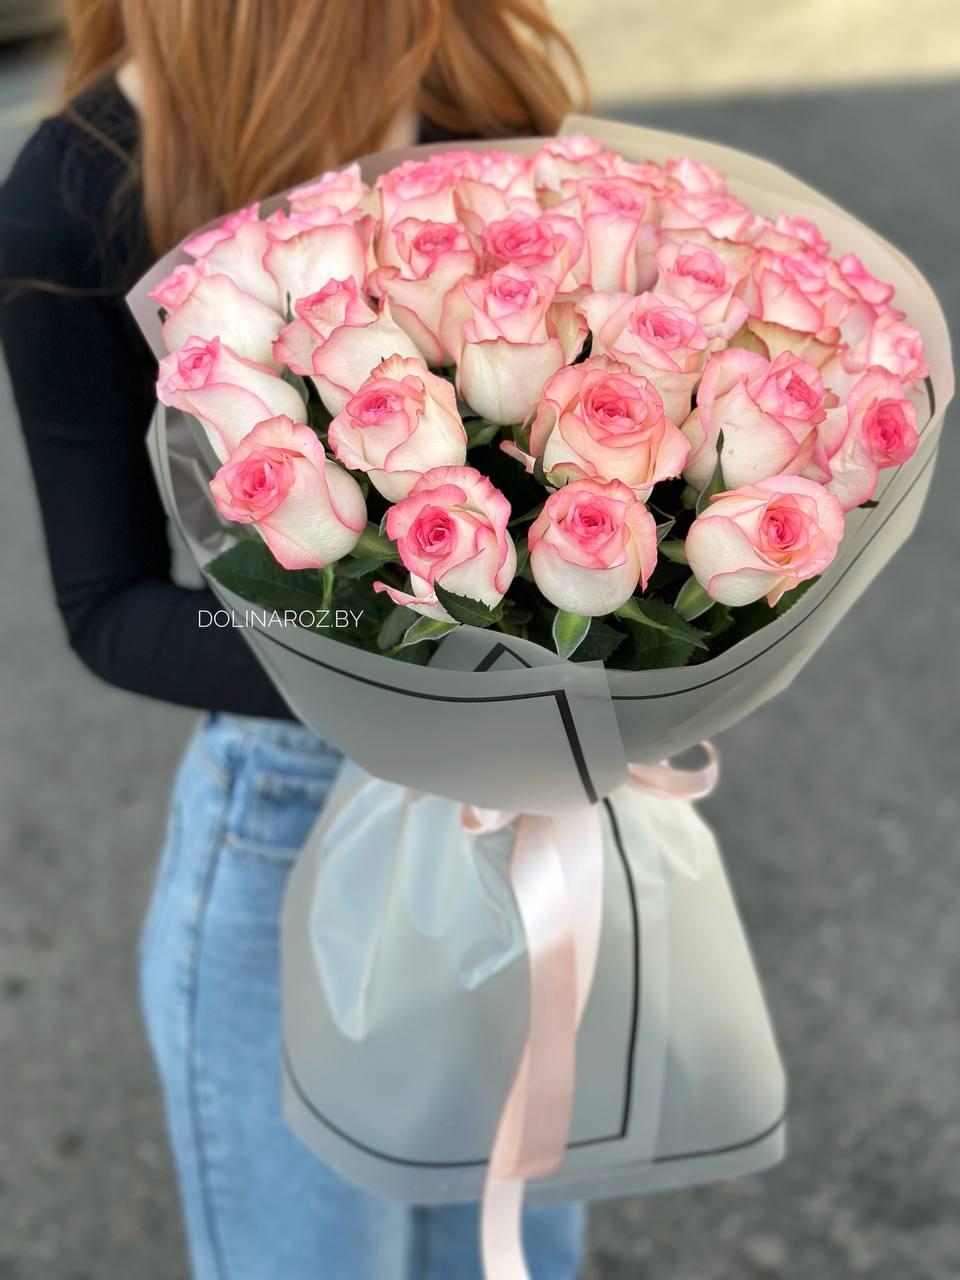  Buy a bouquet of roses sensua